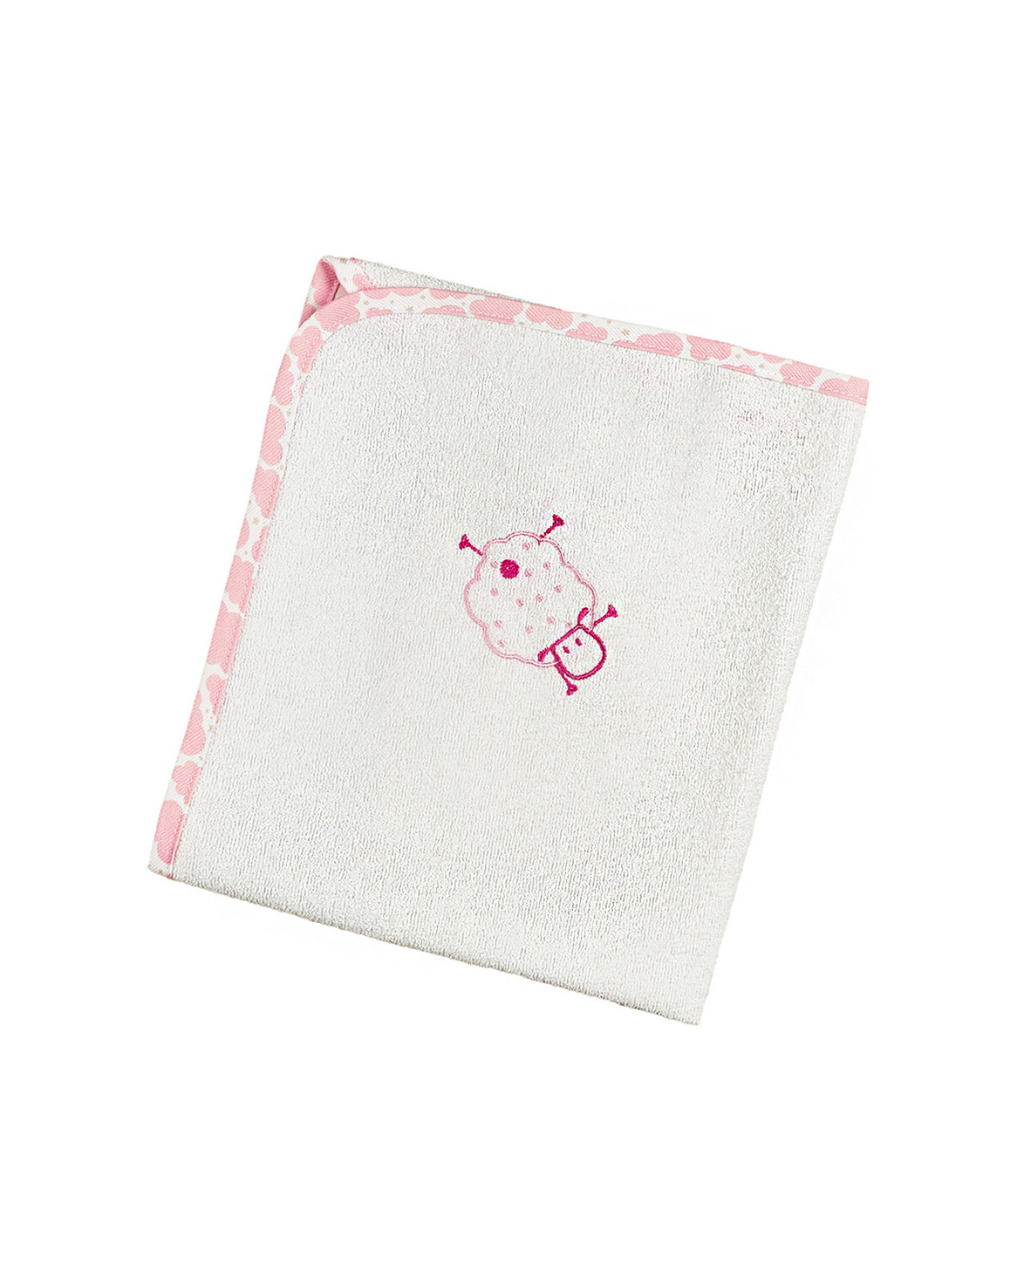 ο κόσμος του μωρού σελτεδάκι 60x80 cm πλαστικοποιημένης πετσέτας sheep ροζ 11291